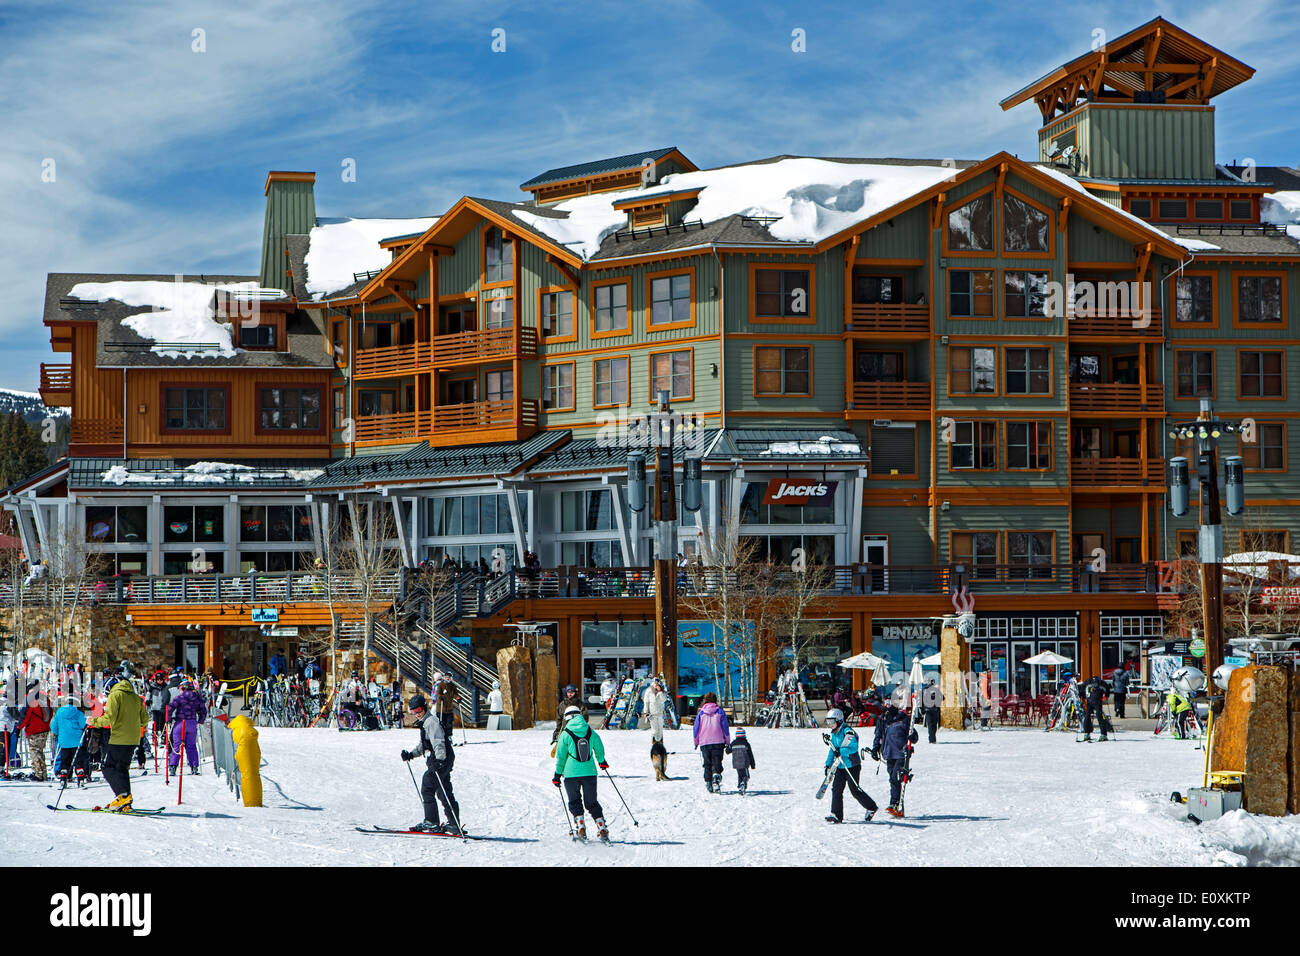 El centro de la localidad, Copper Mountain Ski Resort, Copper Mountain, Colorado, EE.UU. Foto de stock